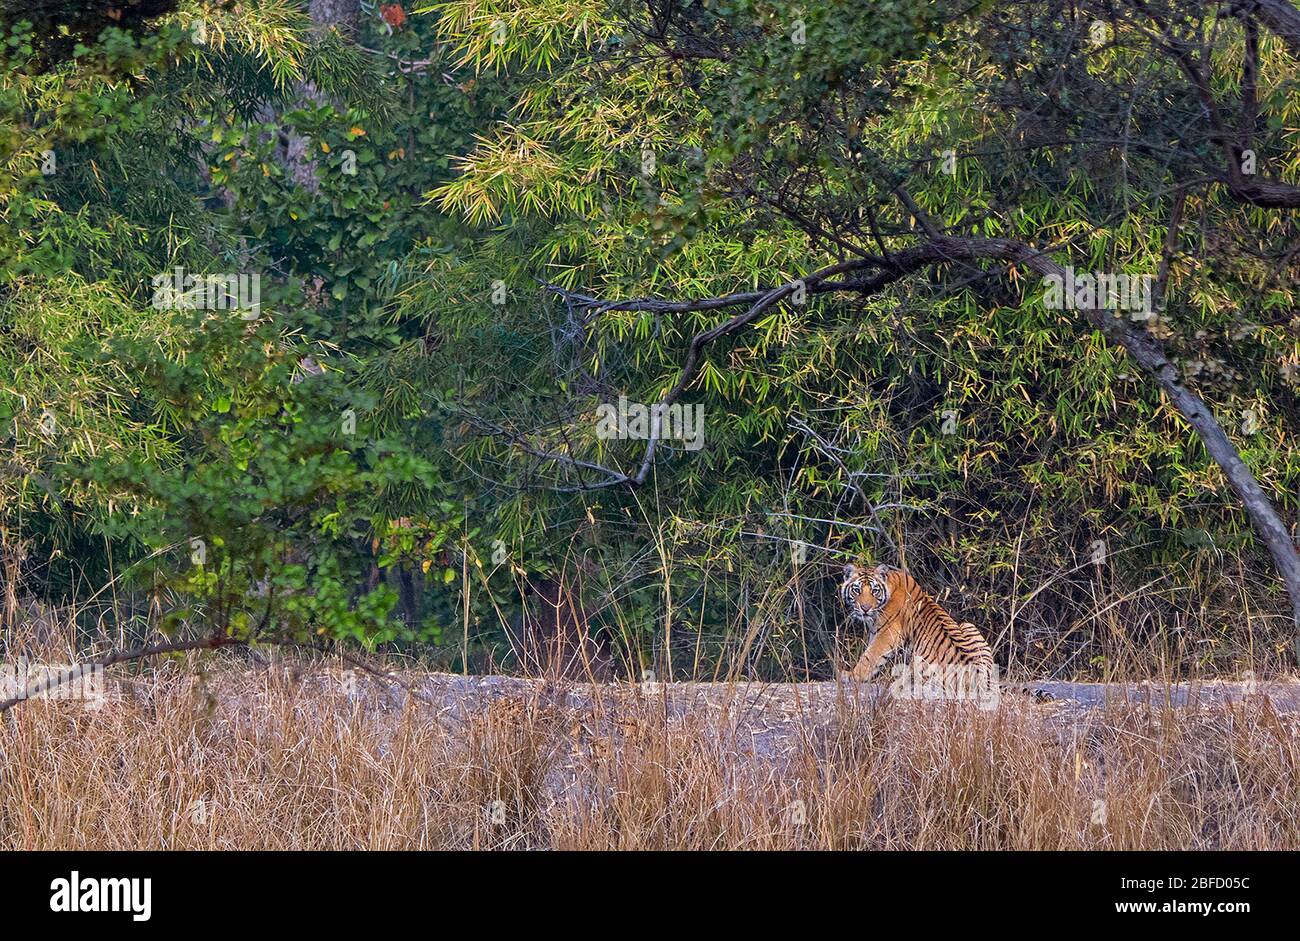 A Tiger cub in its natural habitat at Bandhavgarh National Park, Madhya Pradesh, india Stock Photo